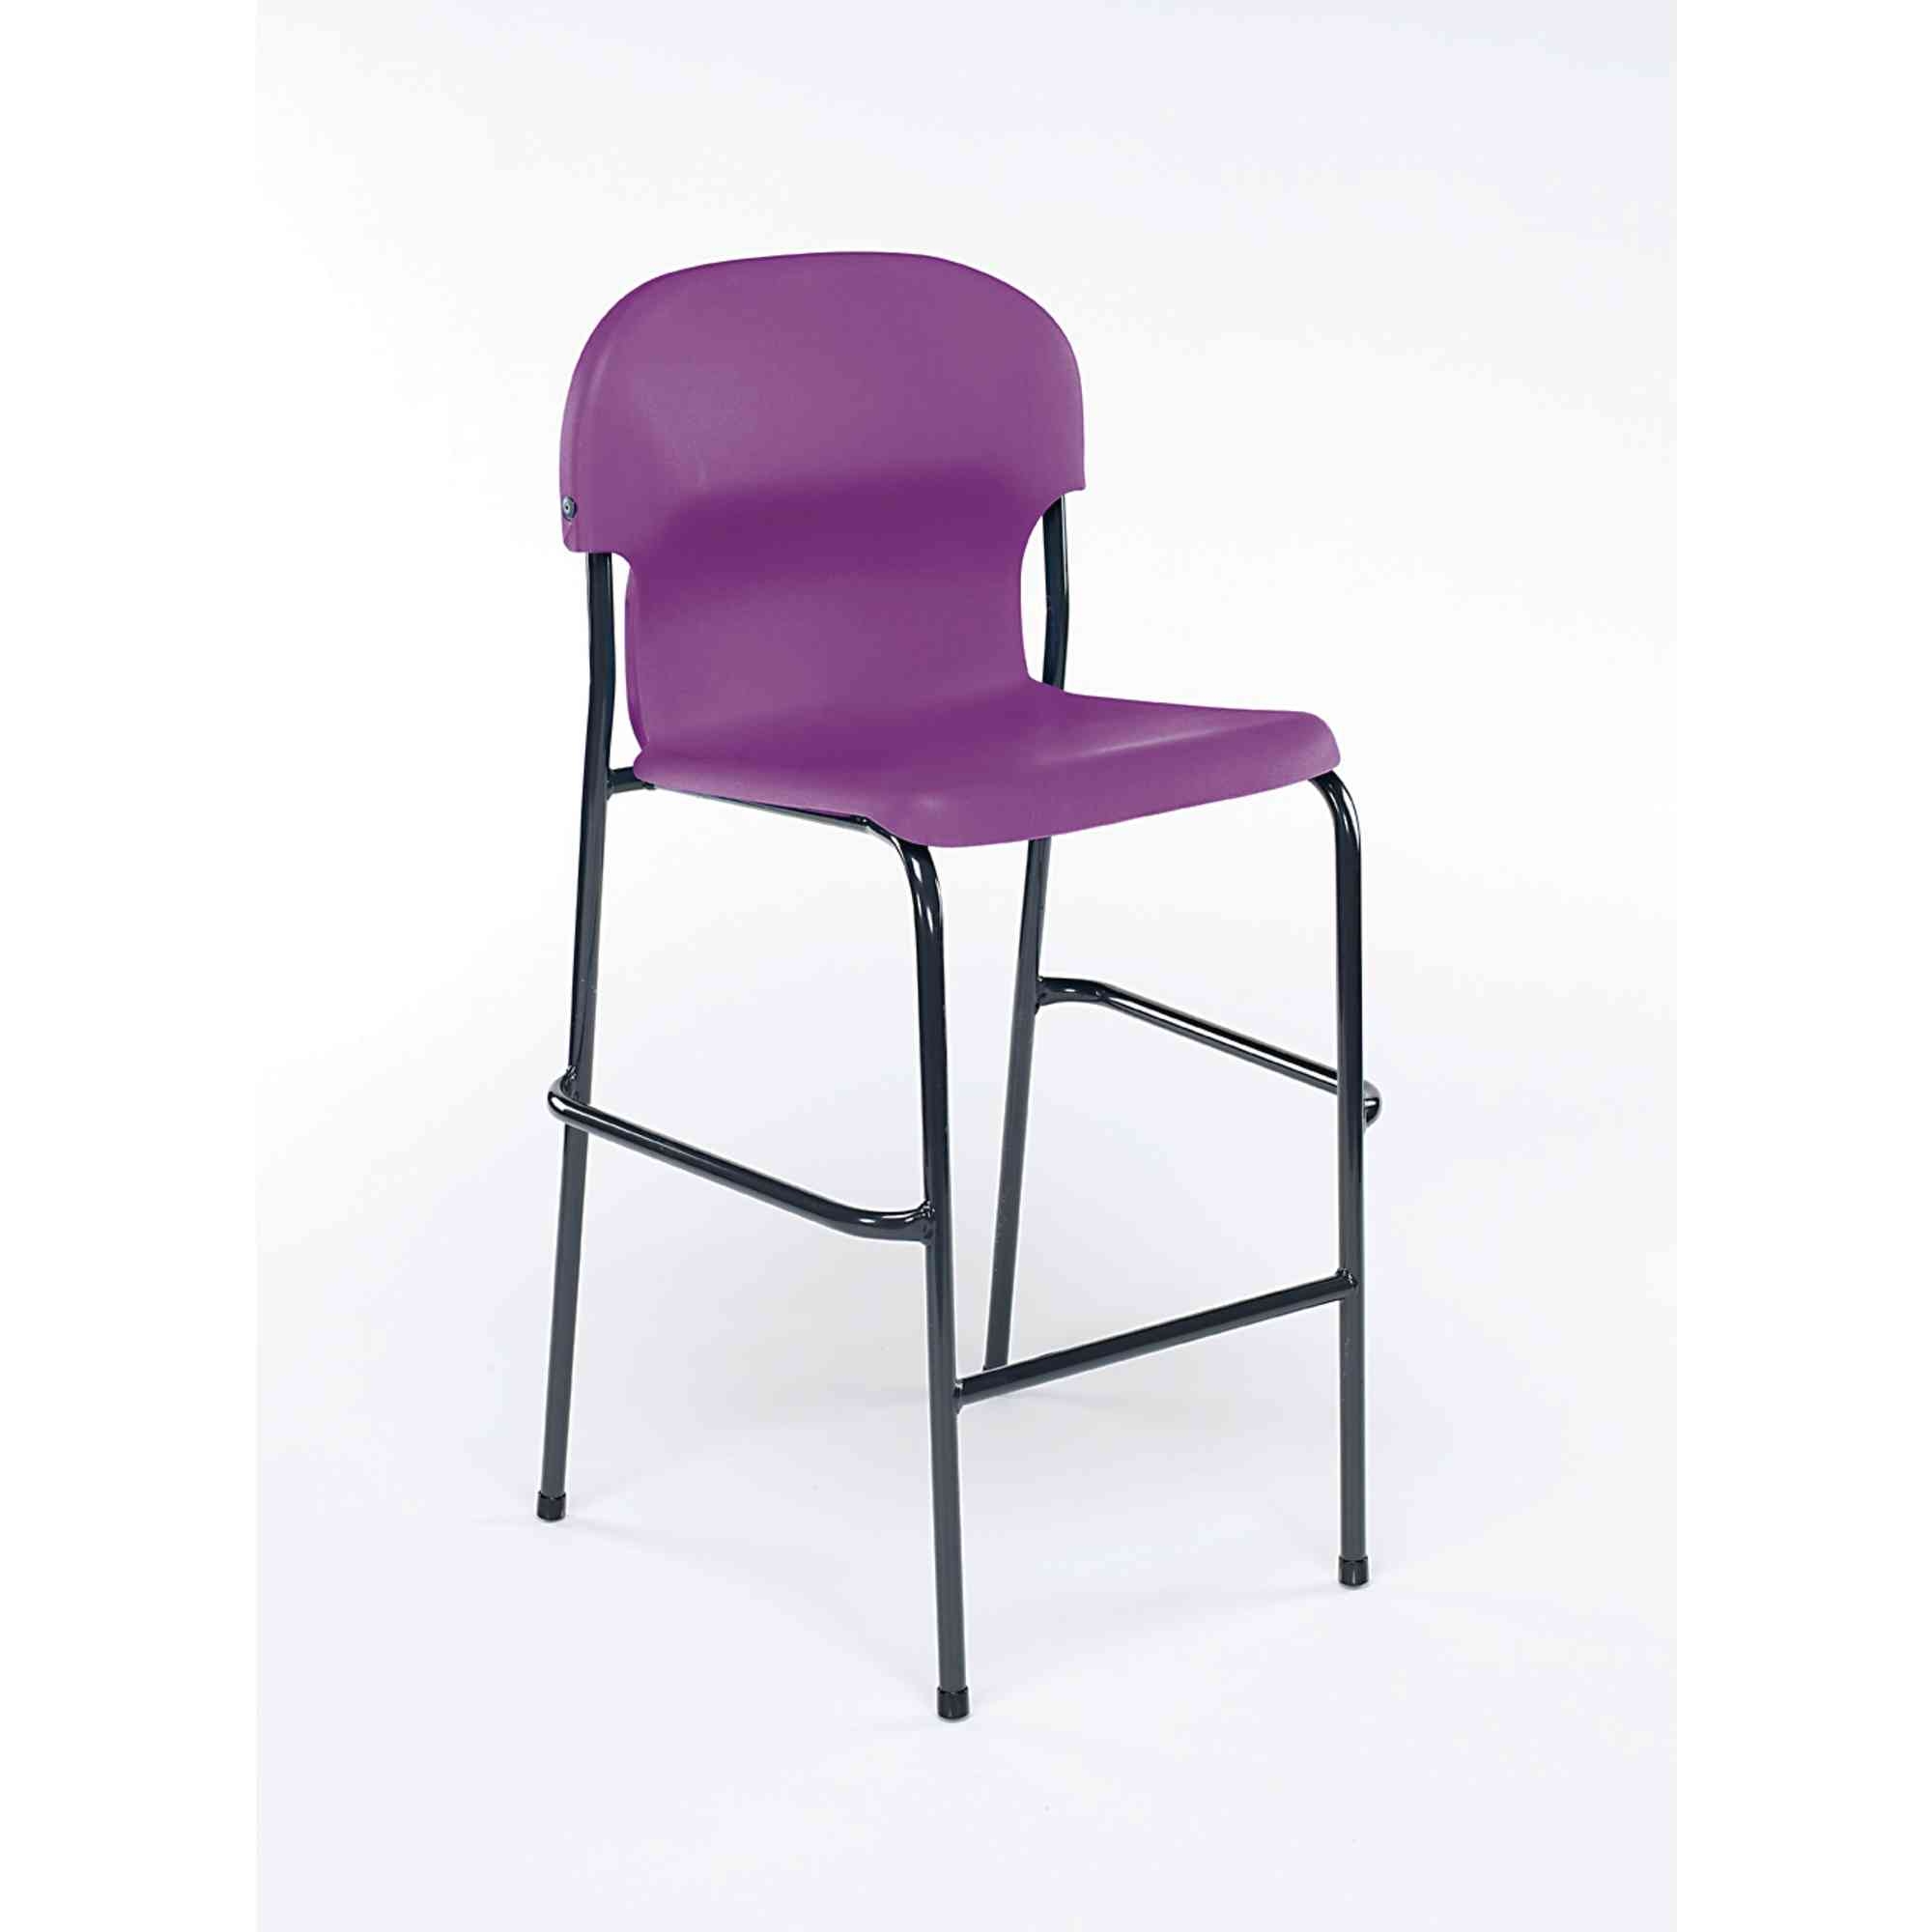 Chair 2000 High Chair - Charcoal